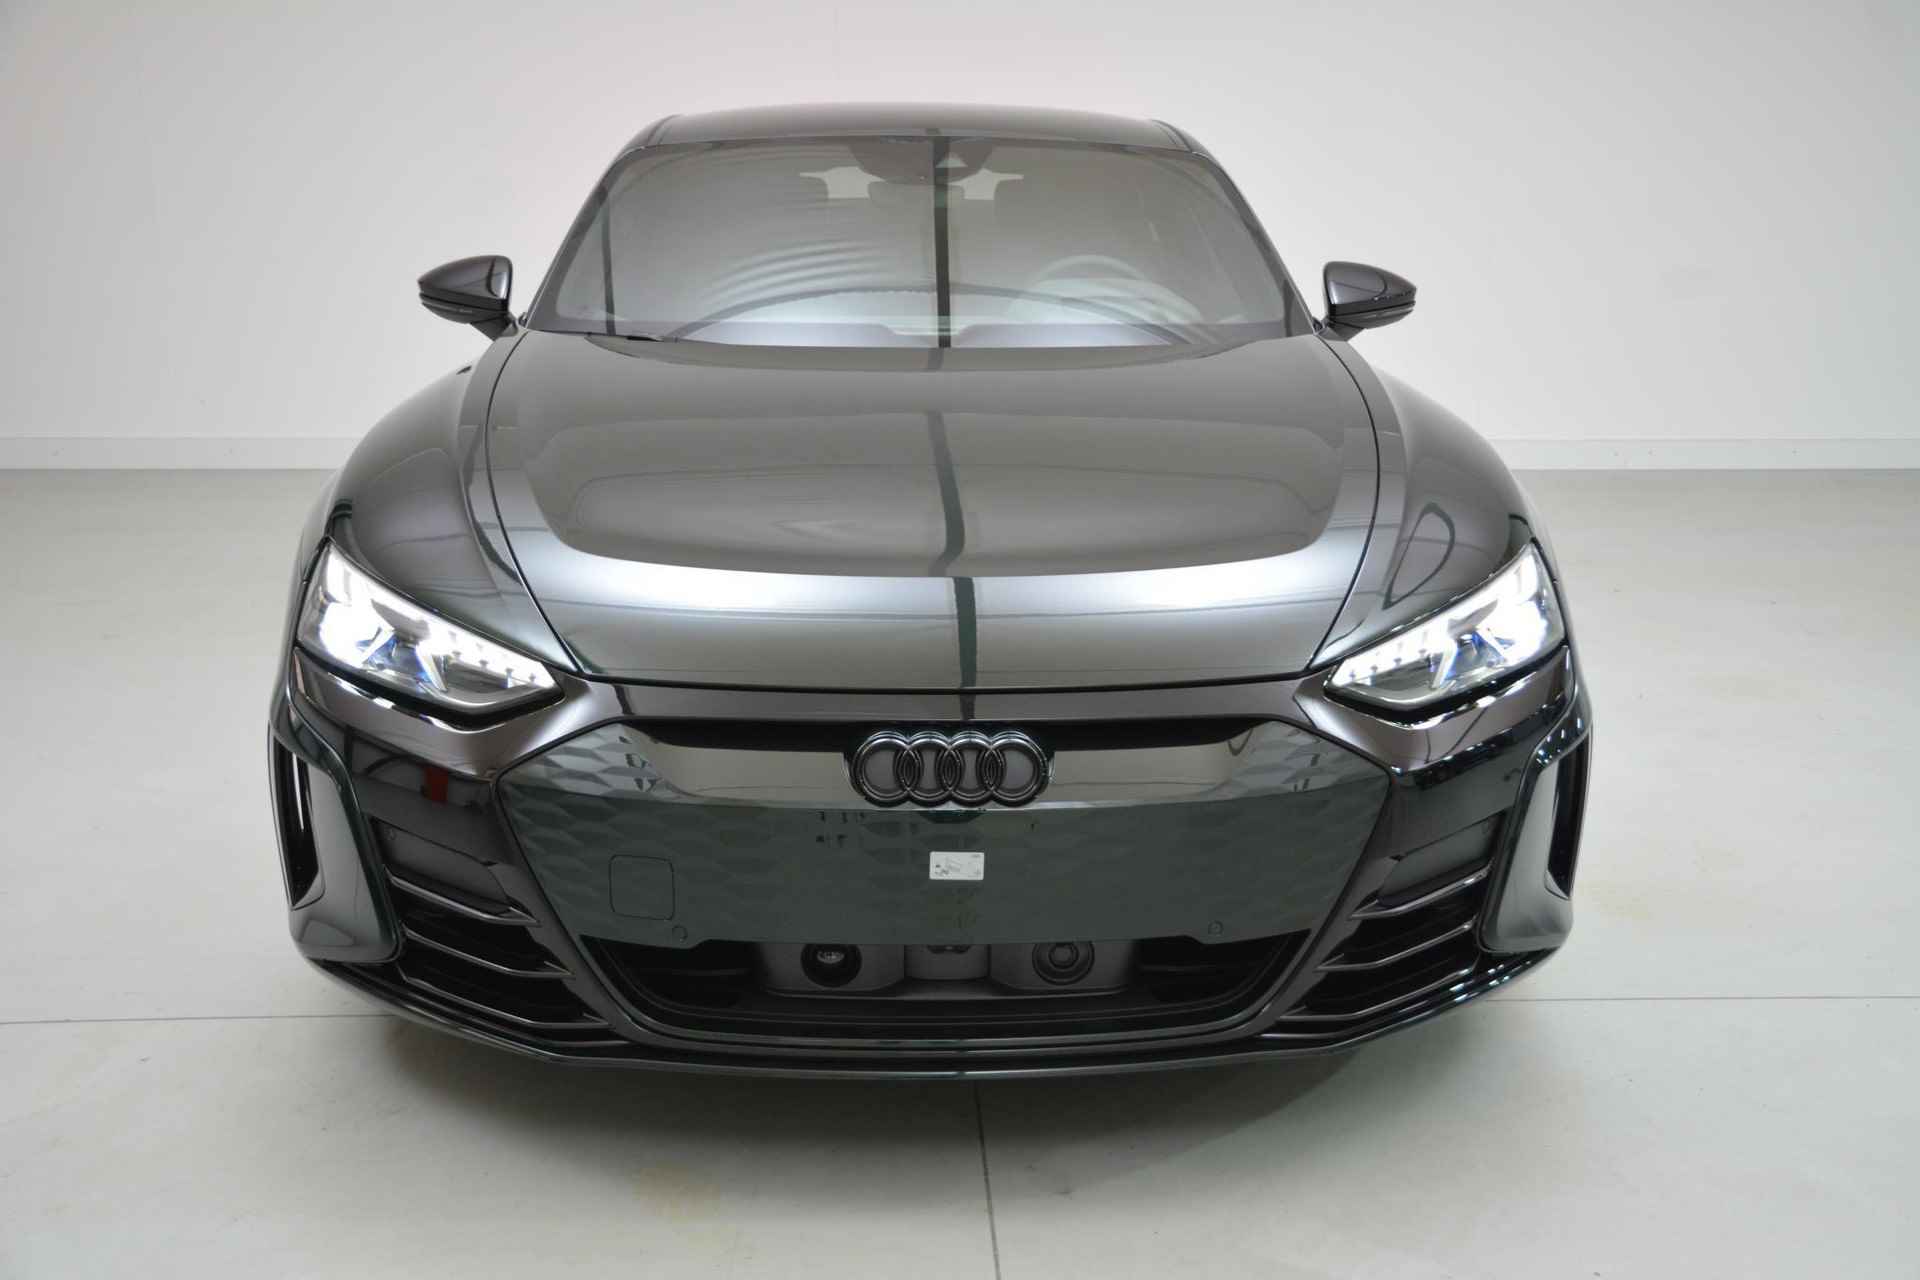 Audi e-tron GT GT Competition 93 kWh 476 PK | Nieuw | NU VAN € 143.900,00 VOOR € 123.900,00!!!! | UNIEKE KLEUR TIEFGRUN ENIGE IN NL!!! | Navigatie | Maxtrix-Laser koplampen | 360 camera | Autonome parkeerfunctie | Dynamische vierwielbesturing | Dodehoek detectie | Glazen panoramadak | Head-up display | Dynamiekpakket plus | Audi virtual cockpit plus | Stoelverwarming voor en achter | Lichtpakket plus ambient light | Optiekpakket zwart plus - 2/30